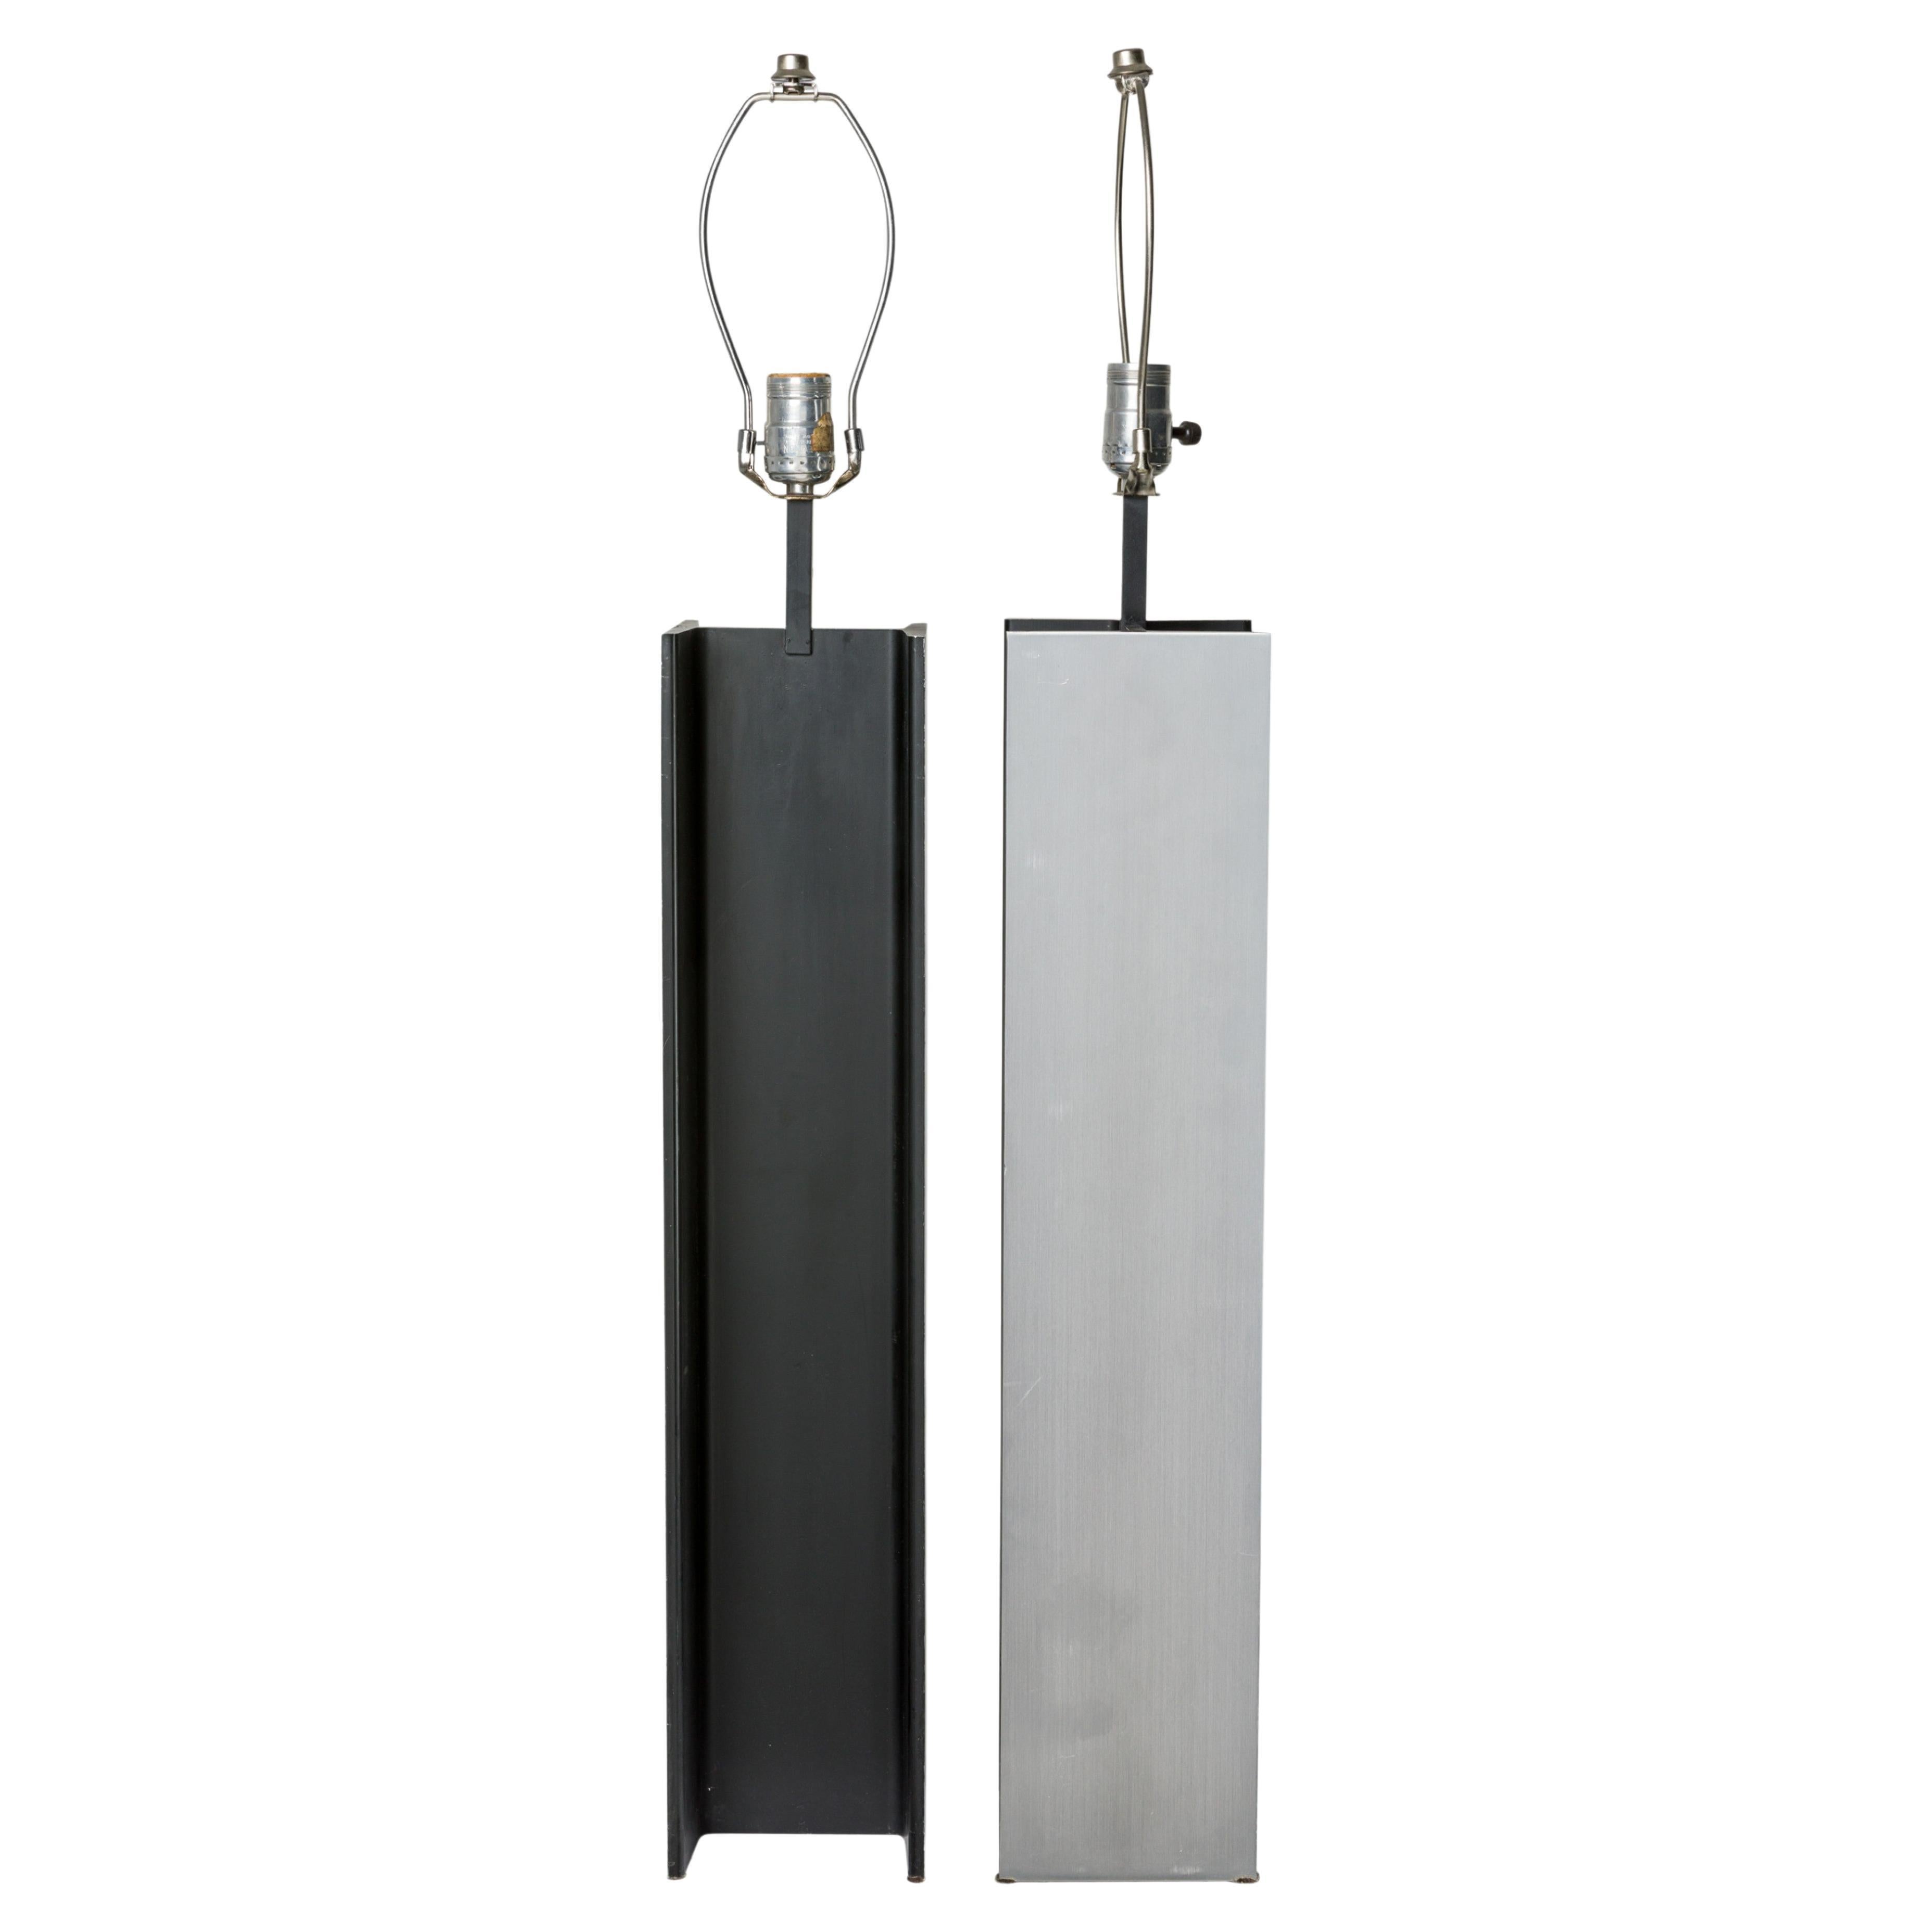 Pair of Laurel Lamp Company I-Beam Design Satin Steel Table Lamps